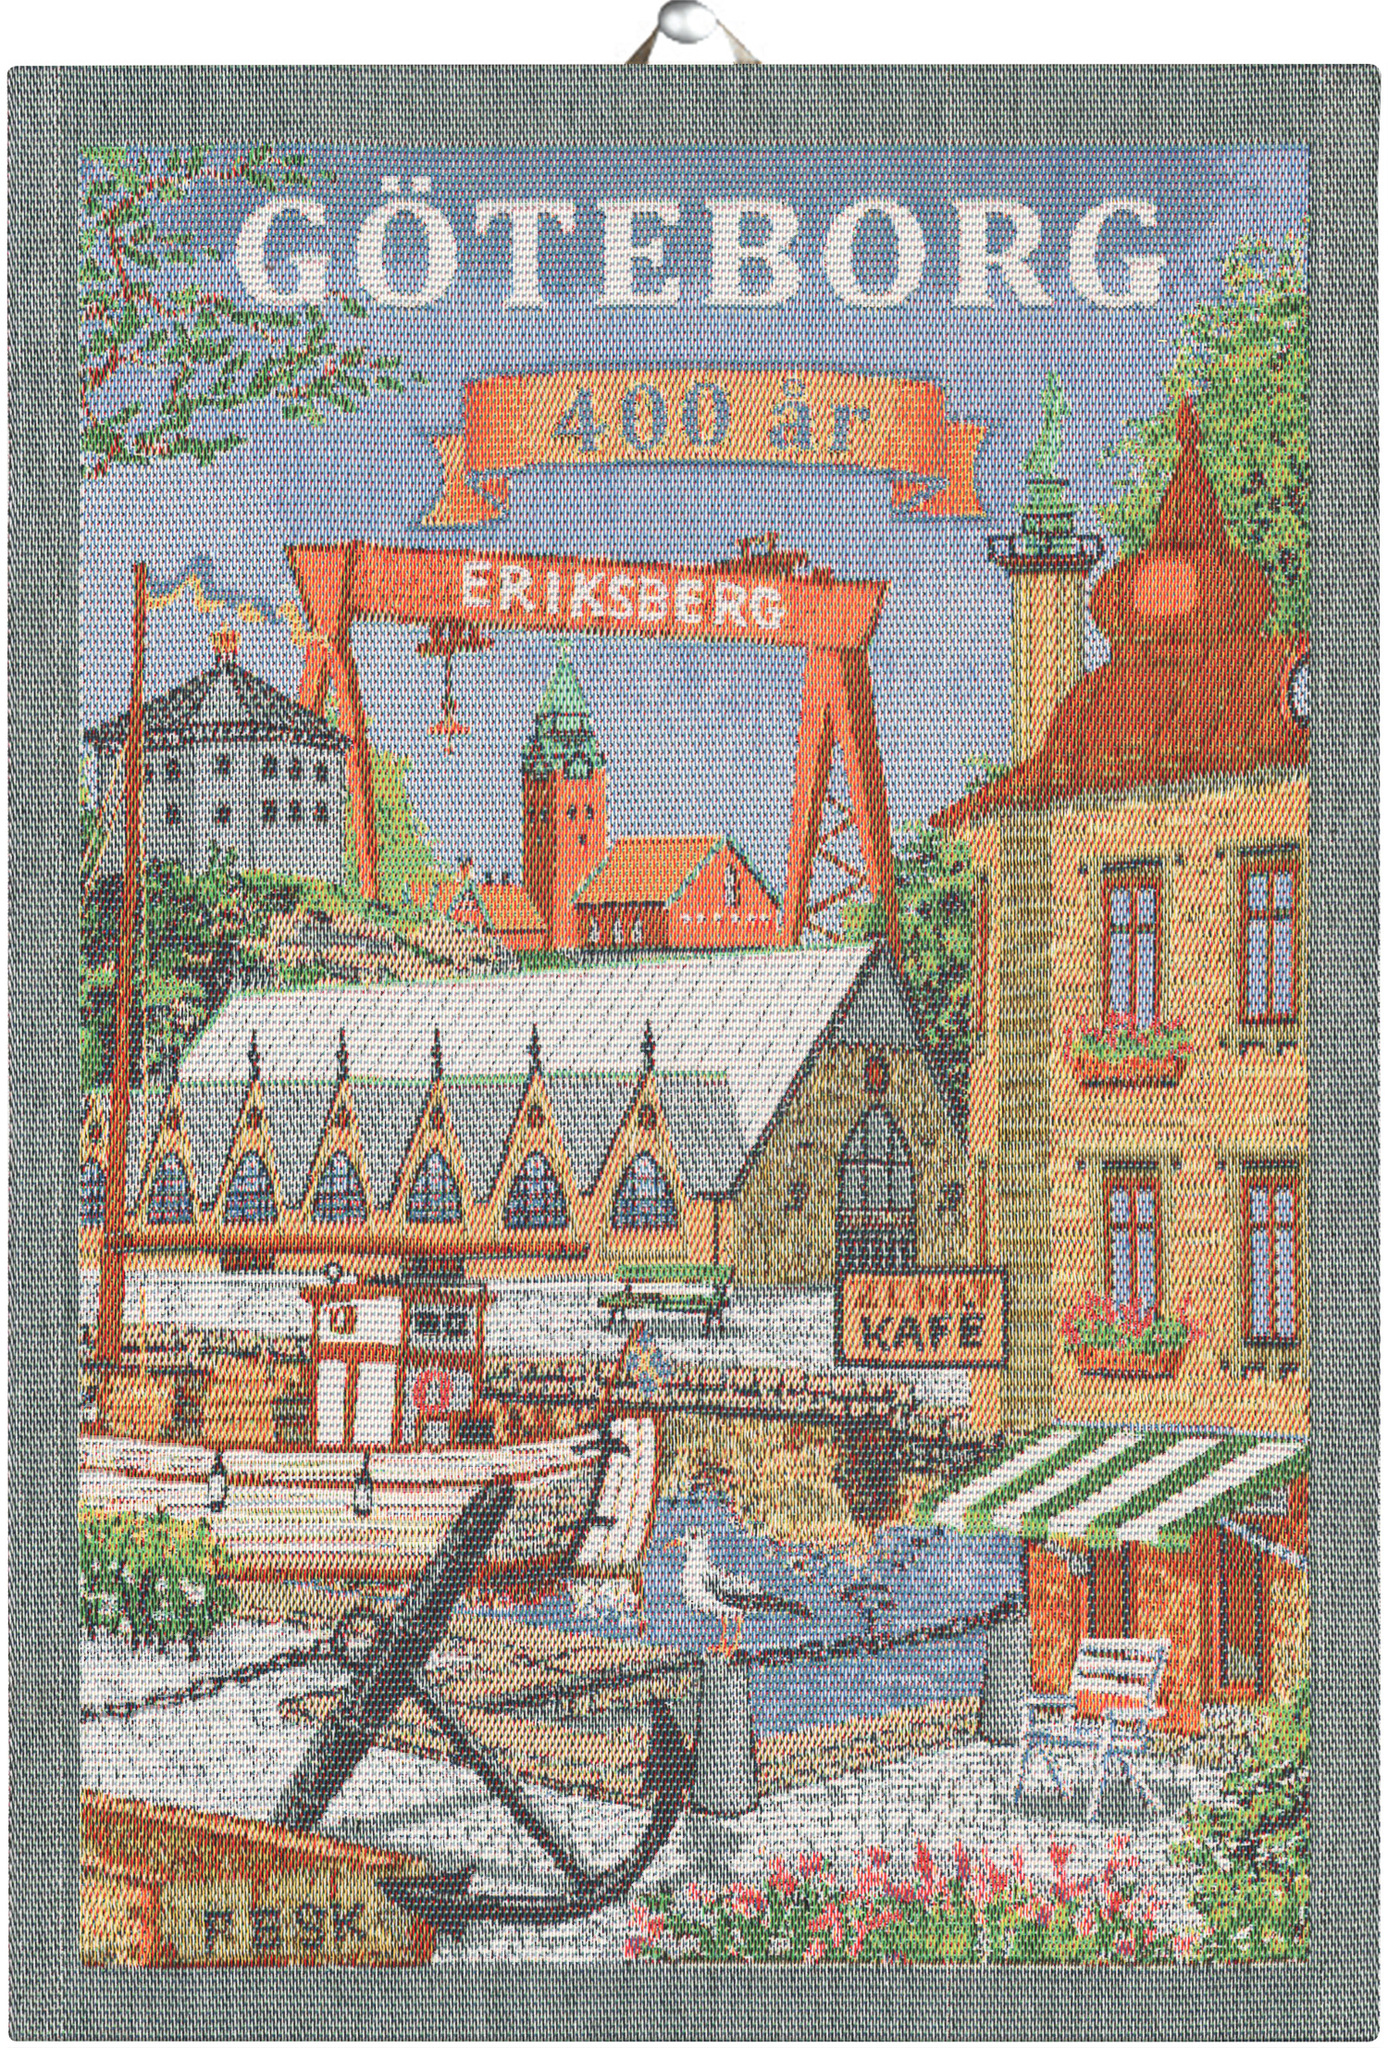 Göteborg 400 år handduk, 100% Ekologisk Bomull